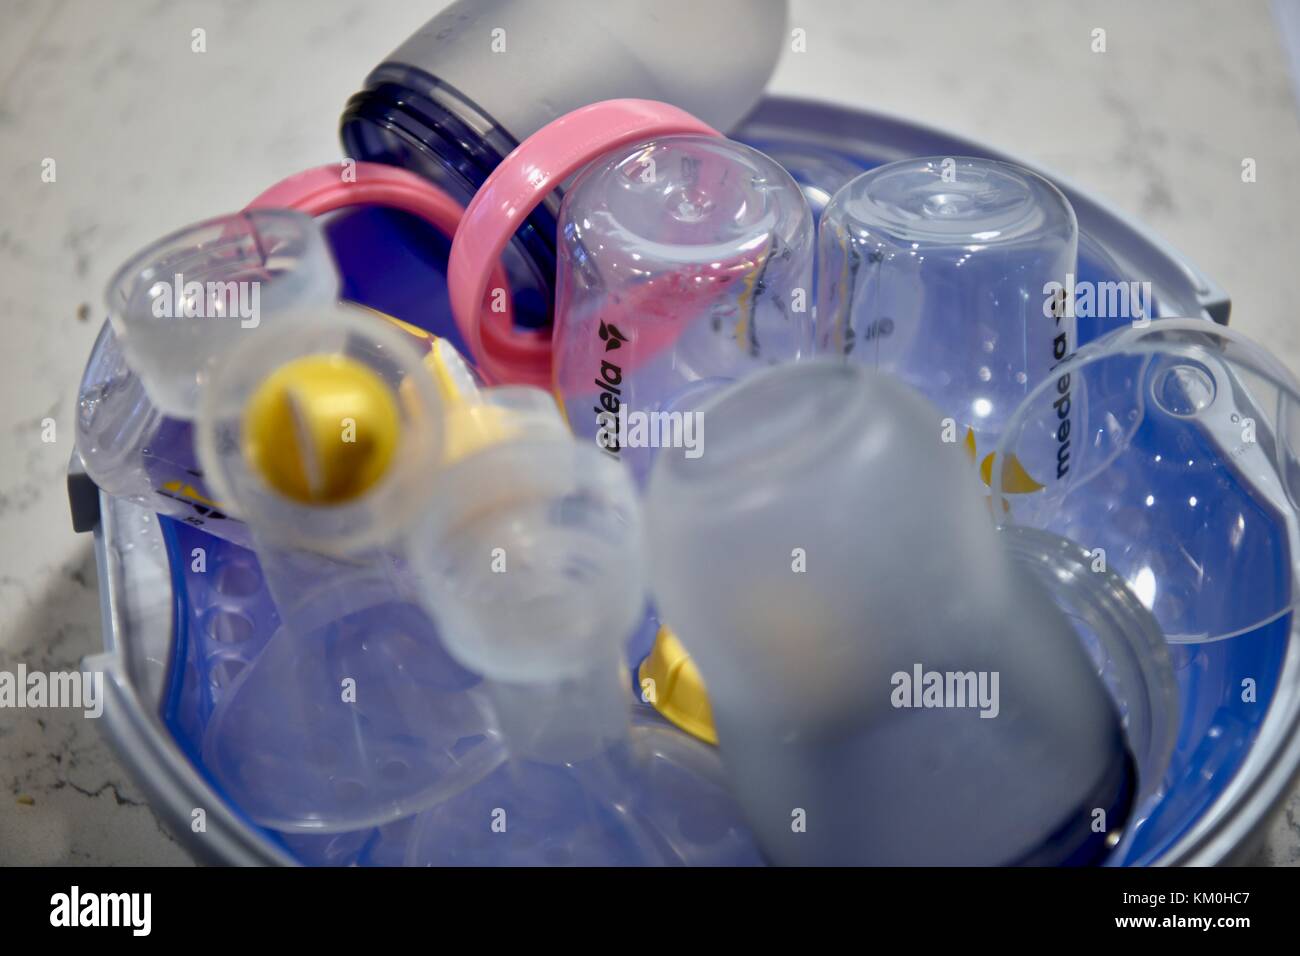 Dampfgarer für Babyflaschen mit Flaschen darin Stockfotografie - Alamy